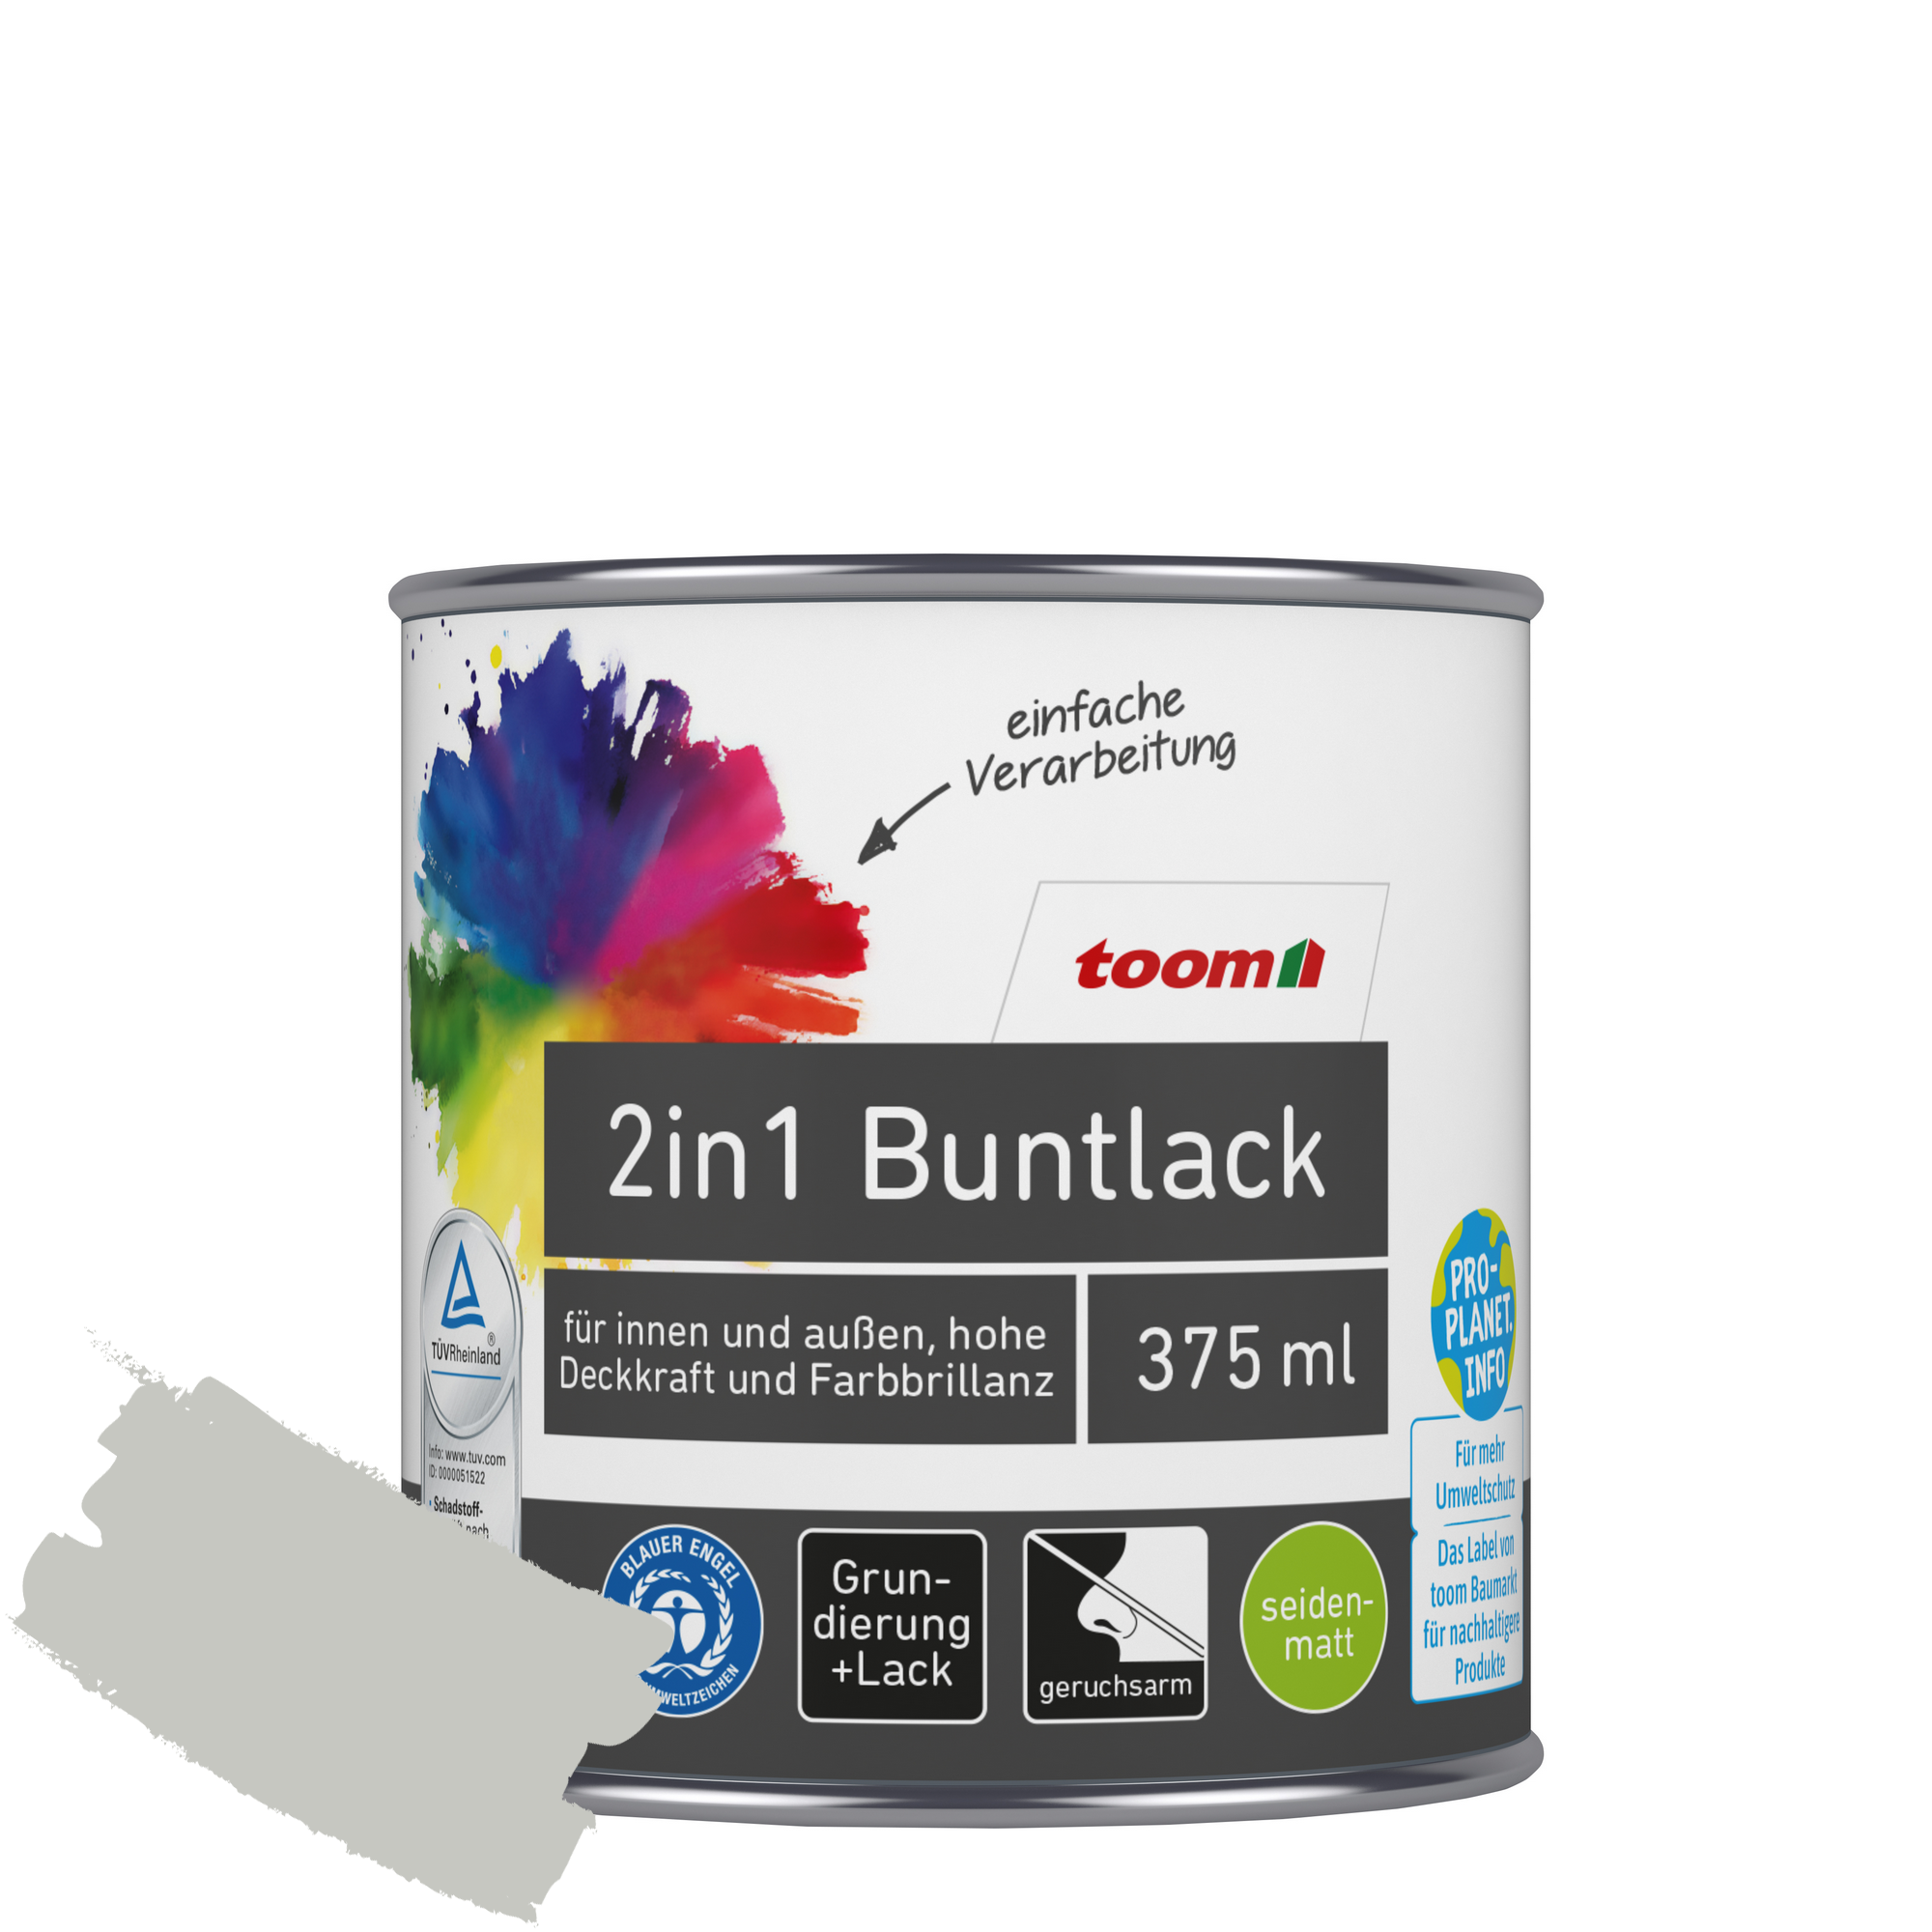 2in1 Buntlack 'Mondschein' lichtgrau seidenmatt 375 ml + product picture